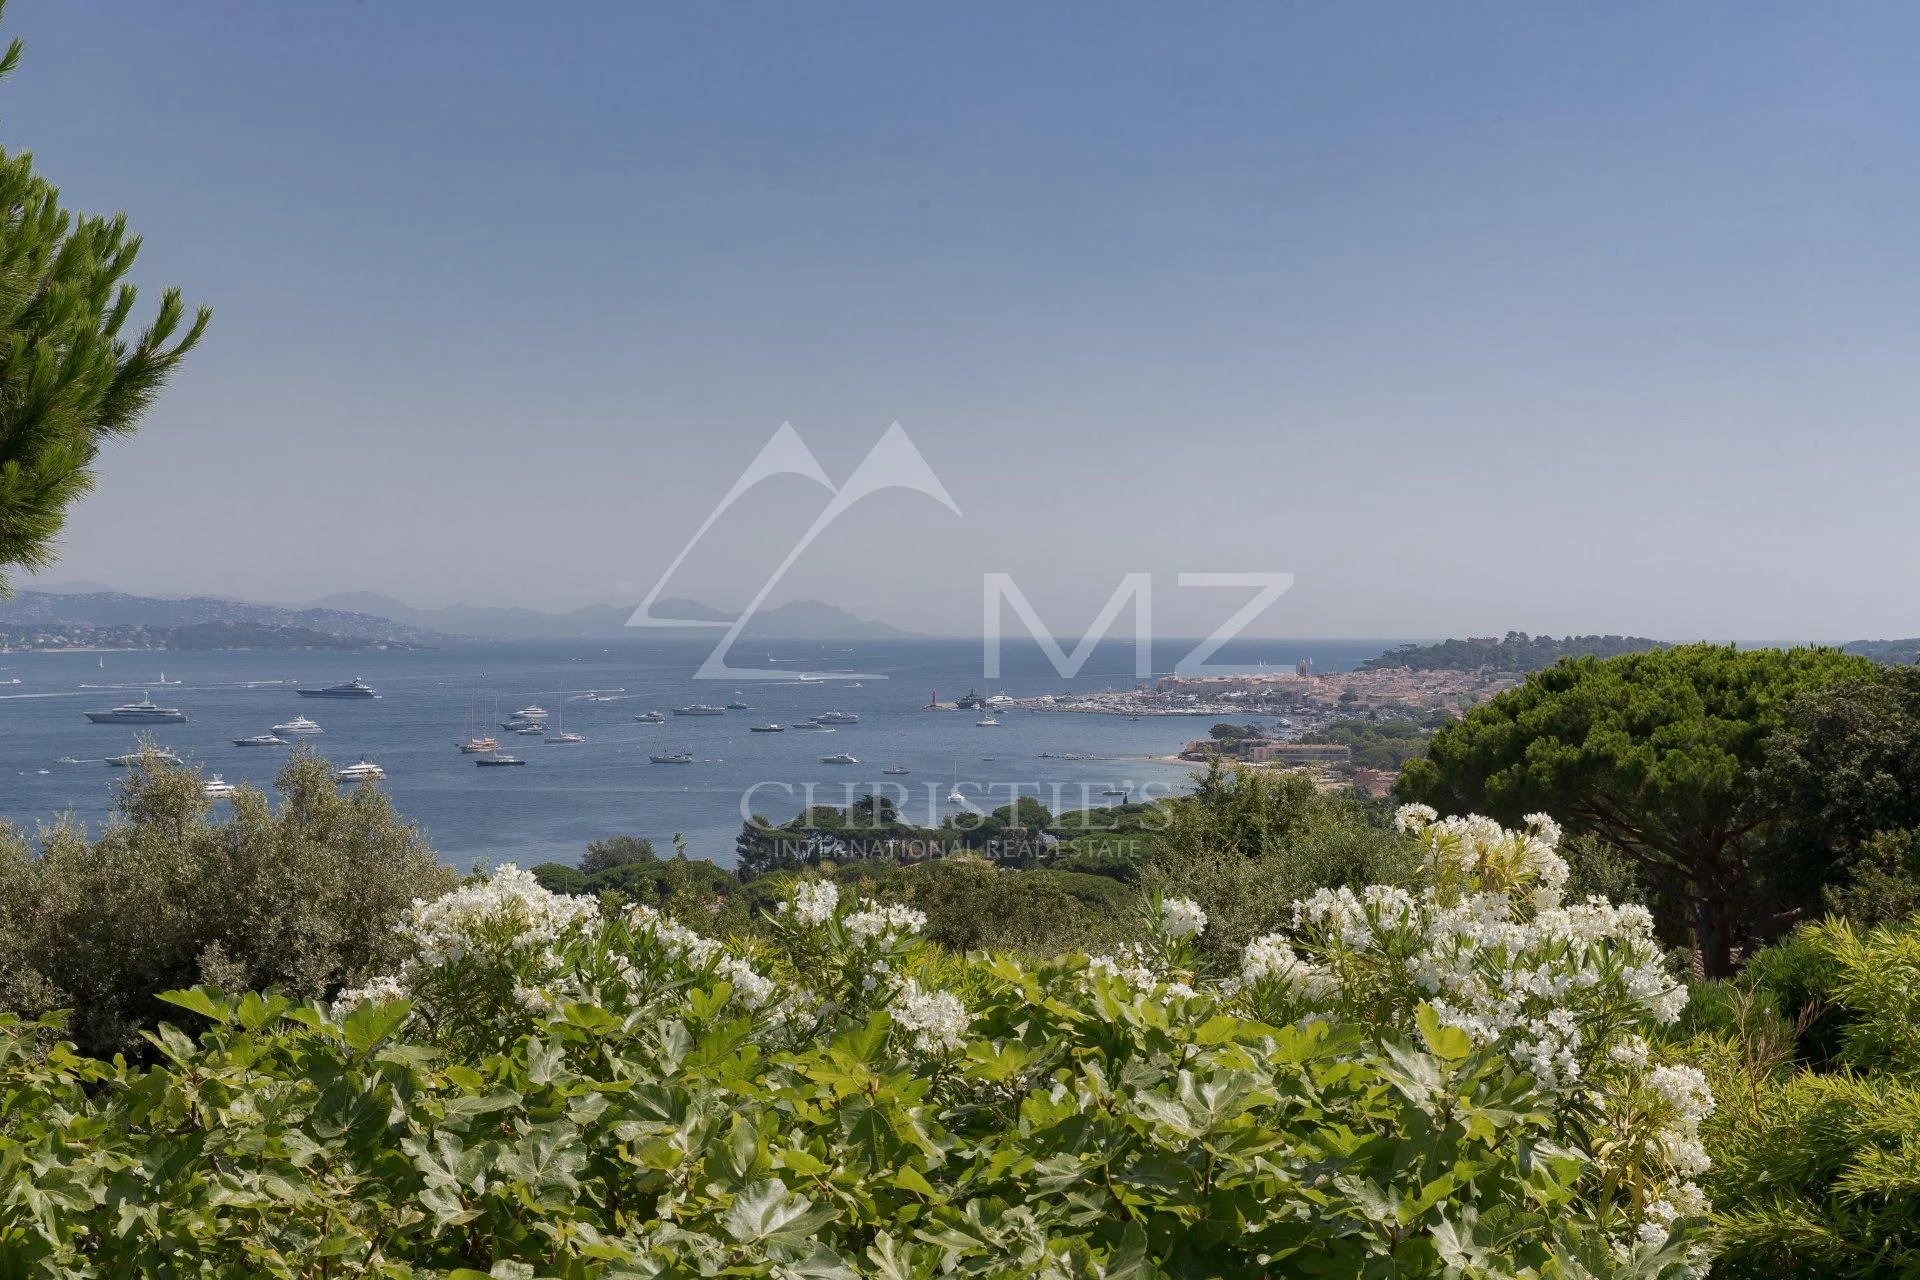 Close to Saint-Tropez - Charming provençal villa with sea view